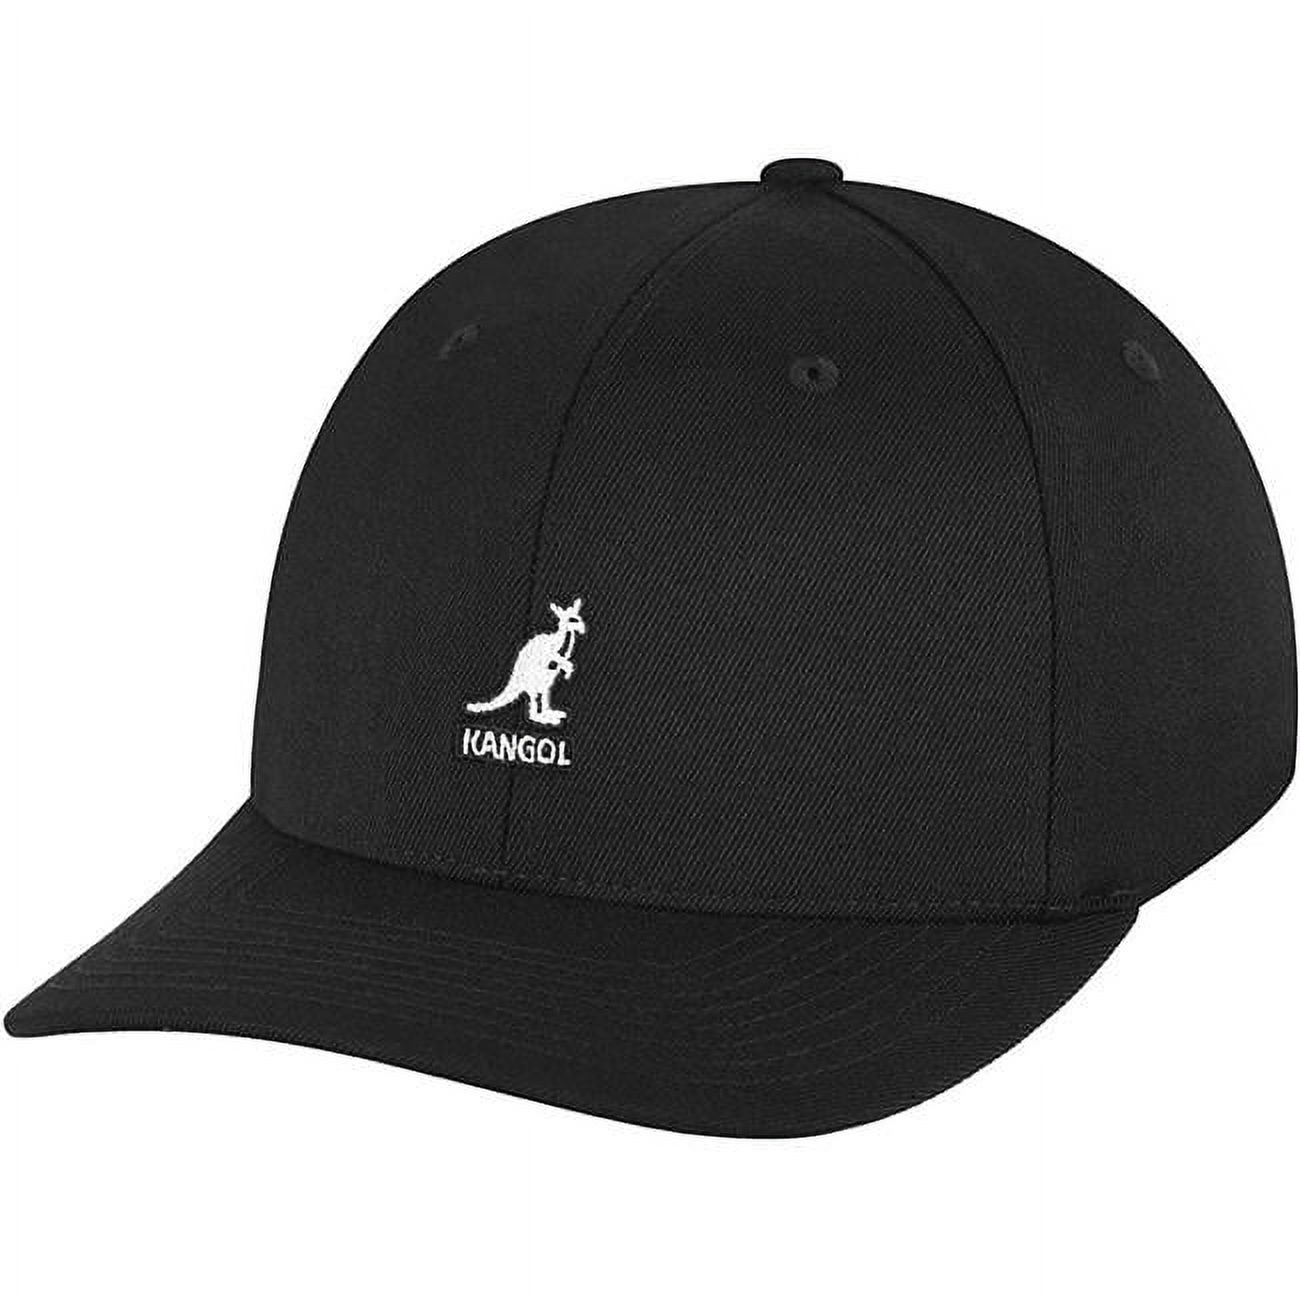 Kangol  Wool Flexfit Baseball Cap - Black - Small & Medium - image 1 of 2